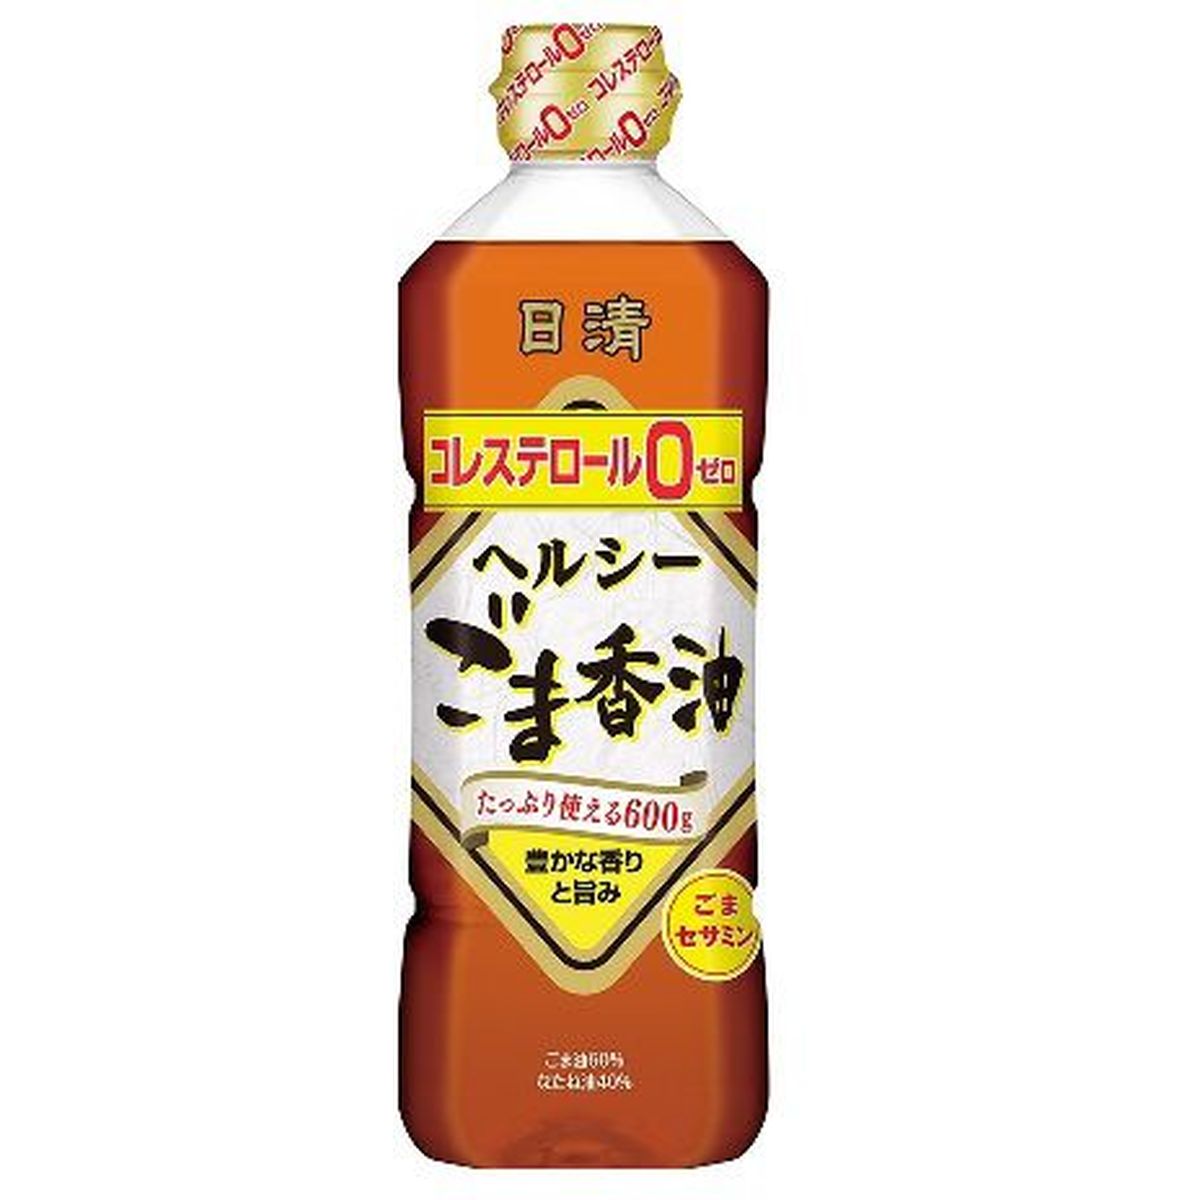 【10個入リ】日清オイリオ ヘルシーゴマ香油 ペット 600g